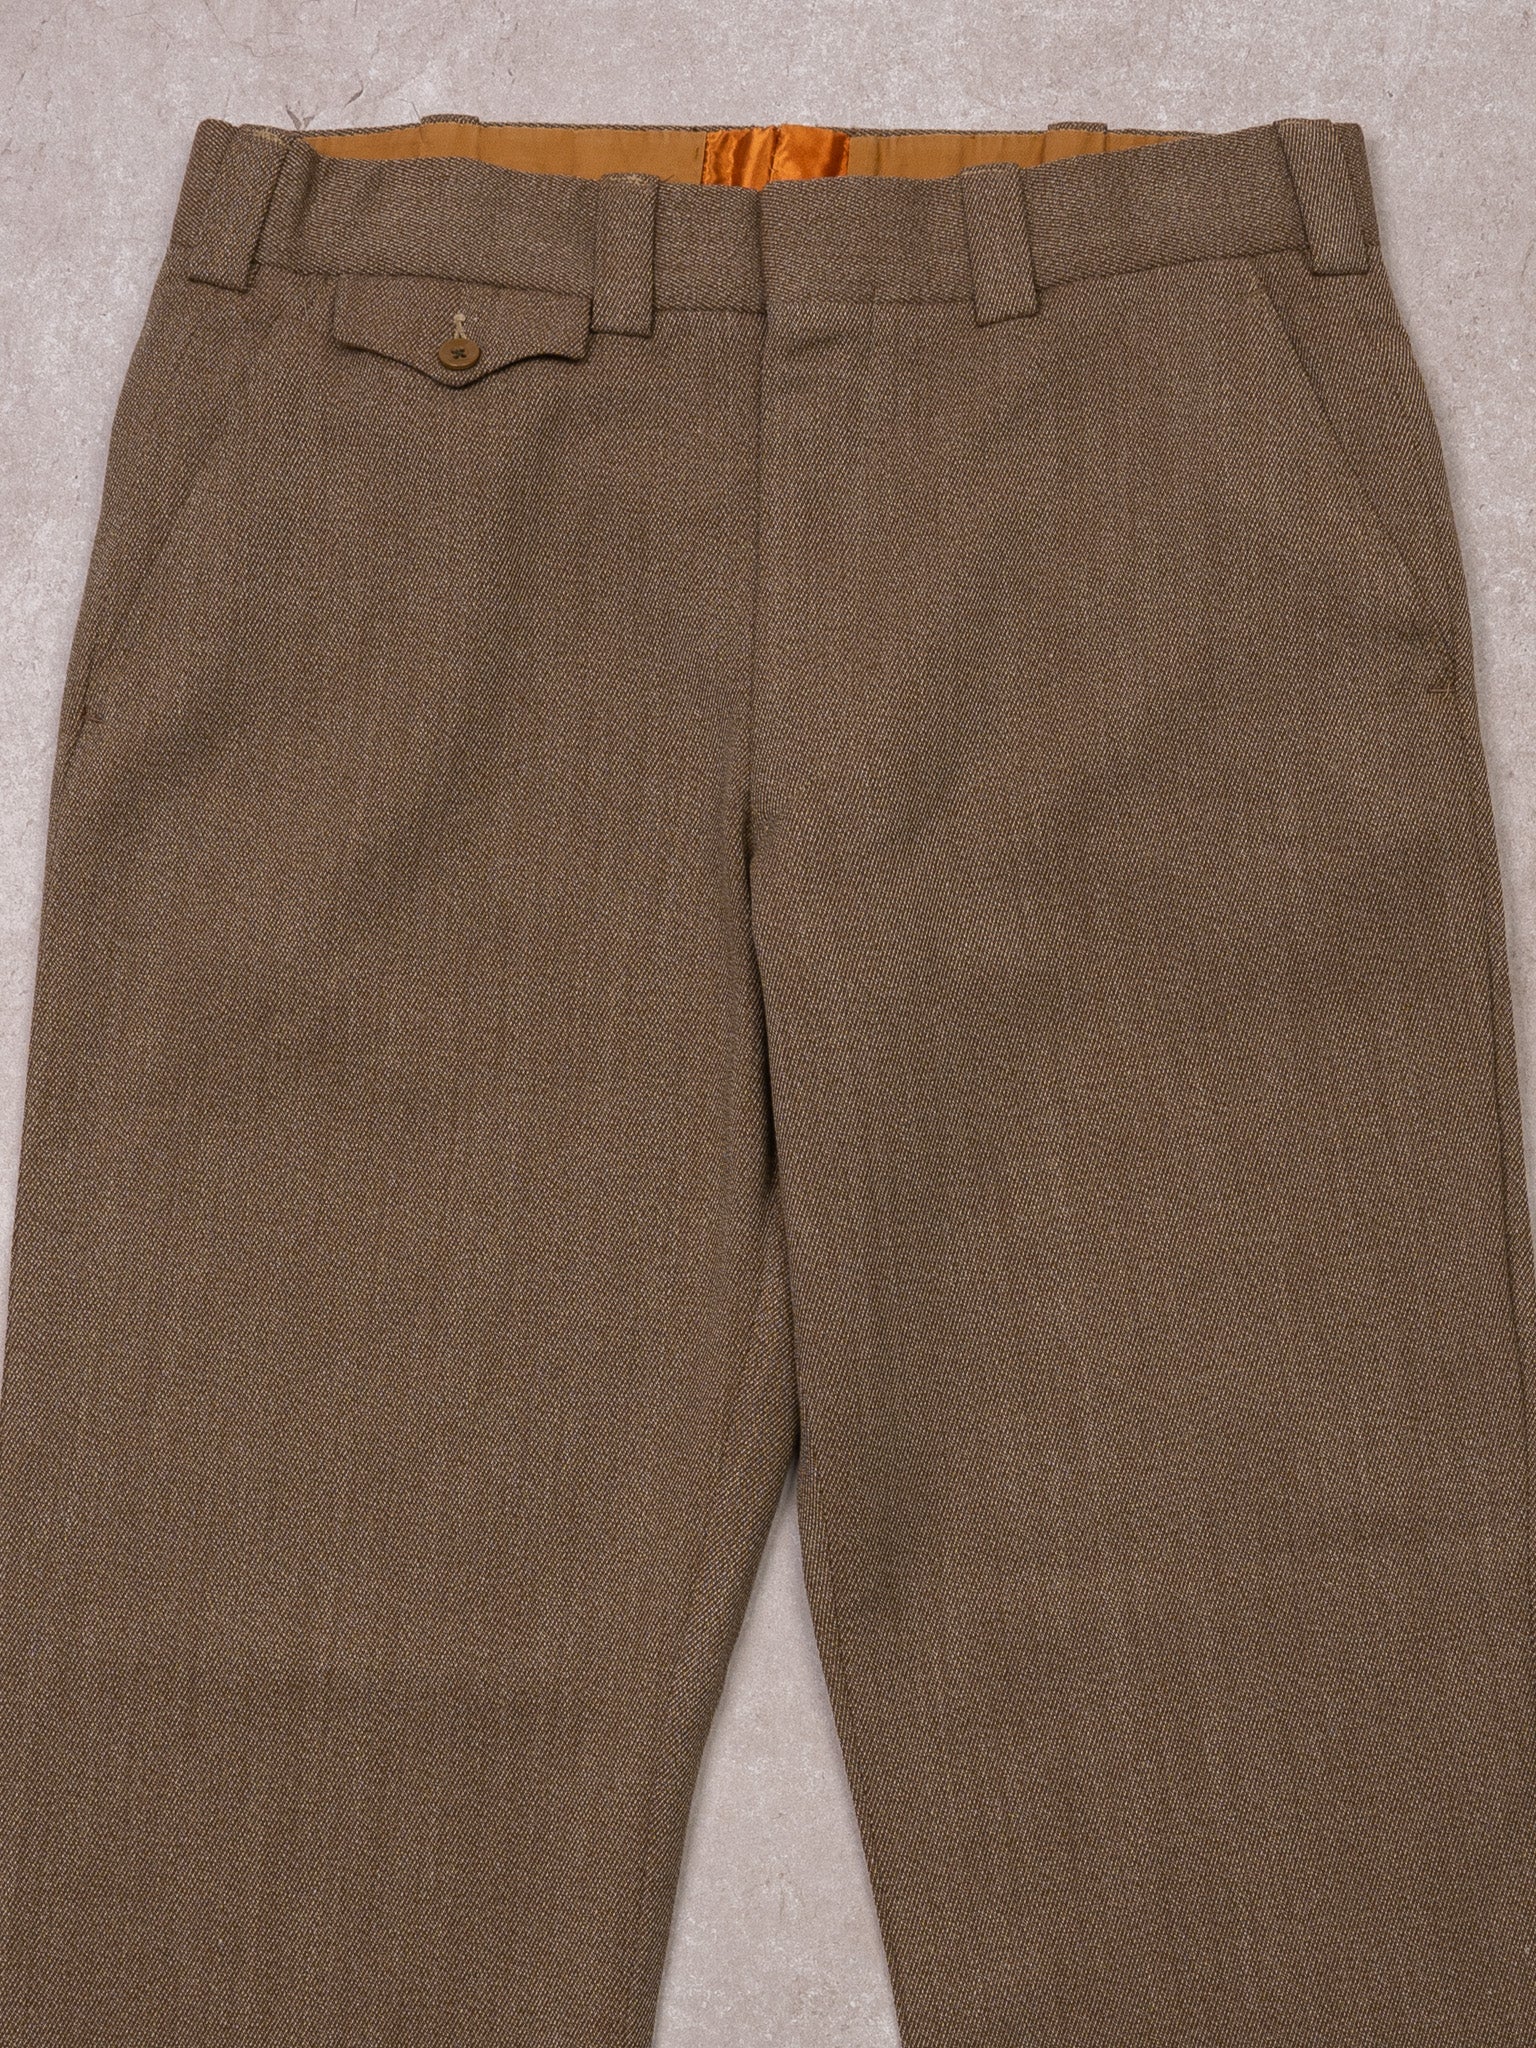 Vintage 60s Brown Wool Dress Pants (34 x 28)